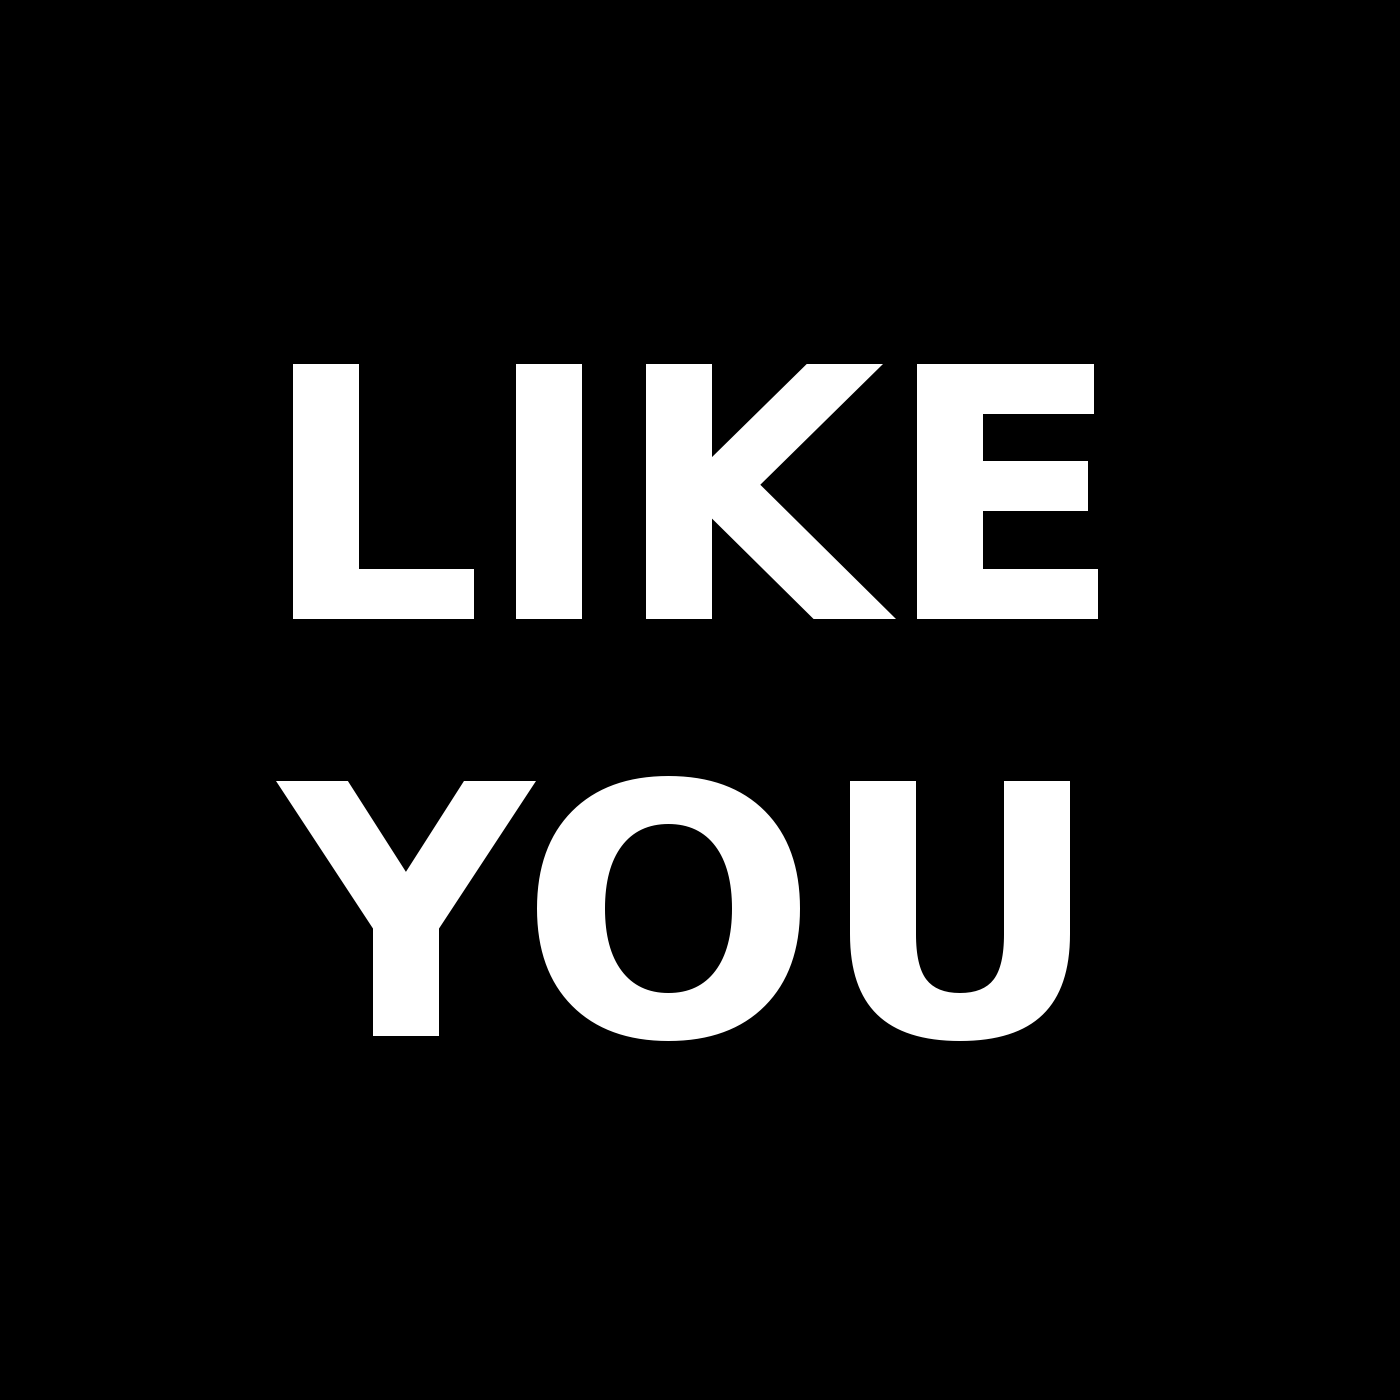 Like You